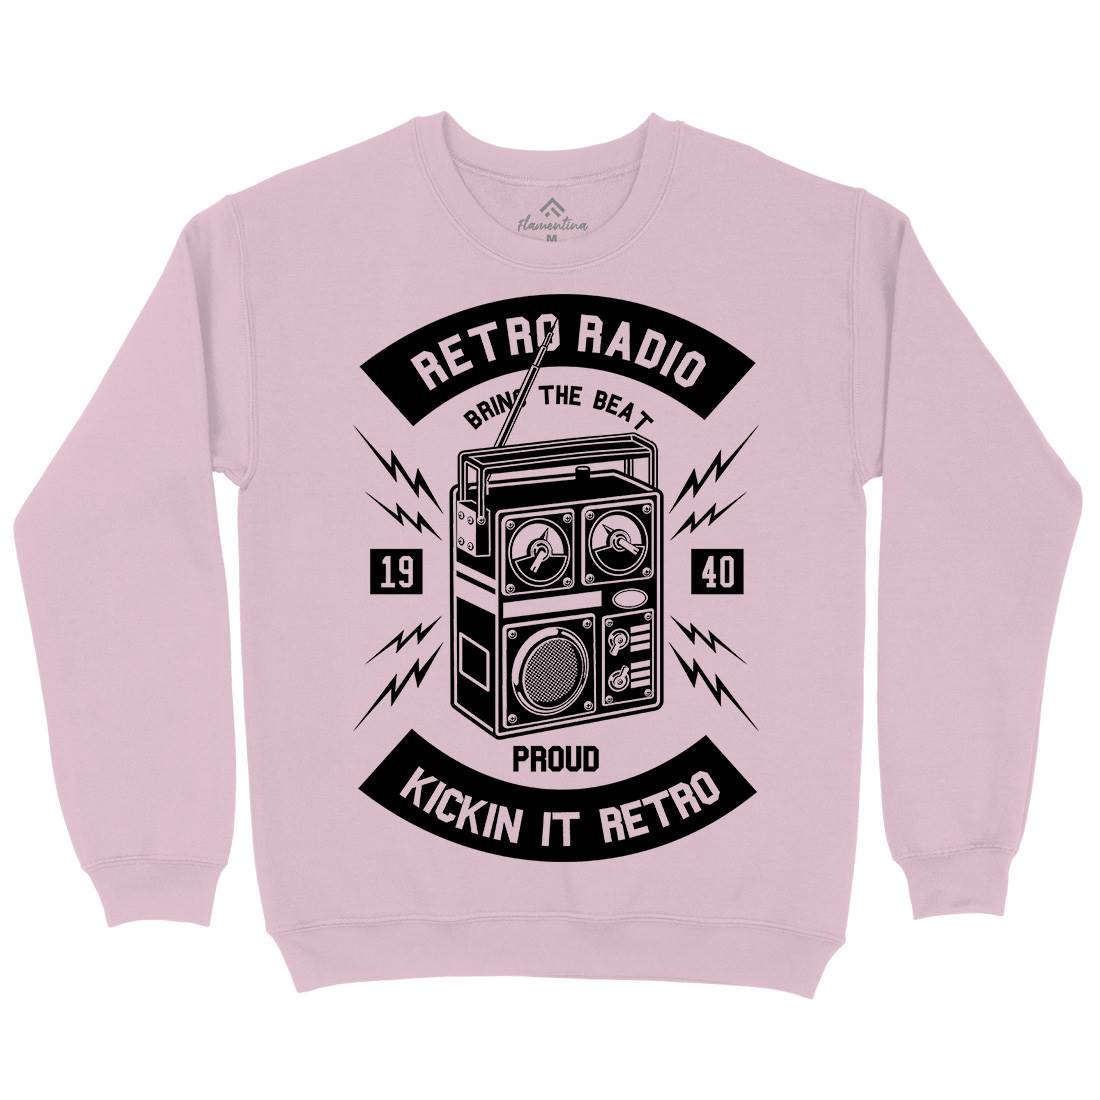 Retro Radio Kids Crew Neck Sweatshirt Music B610